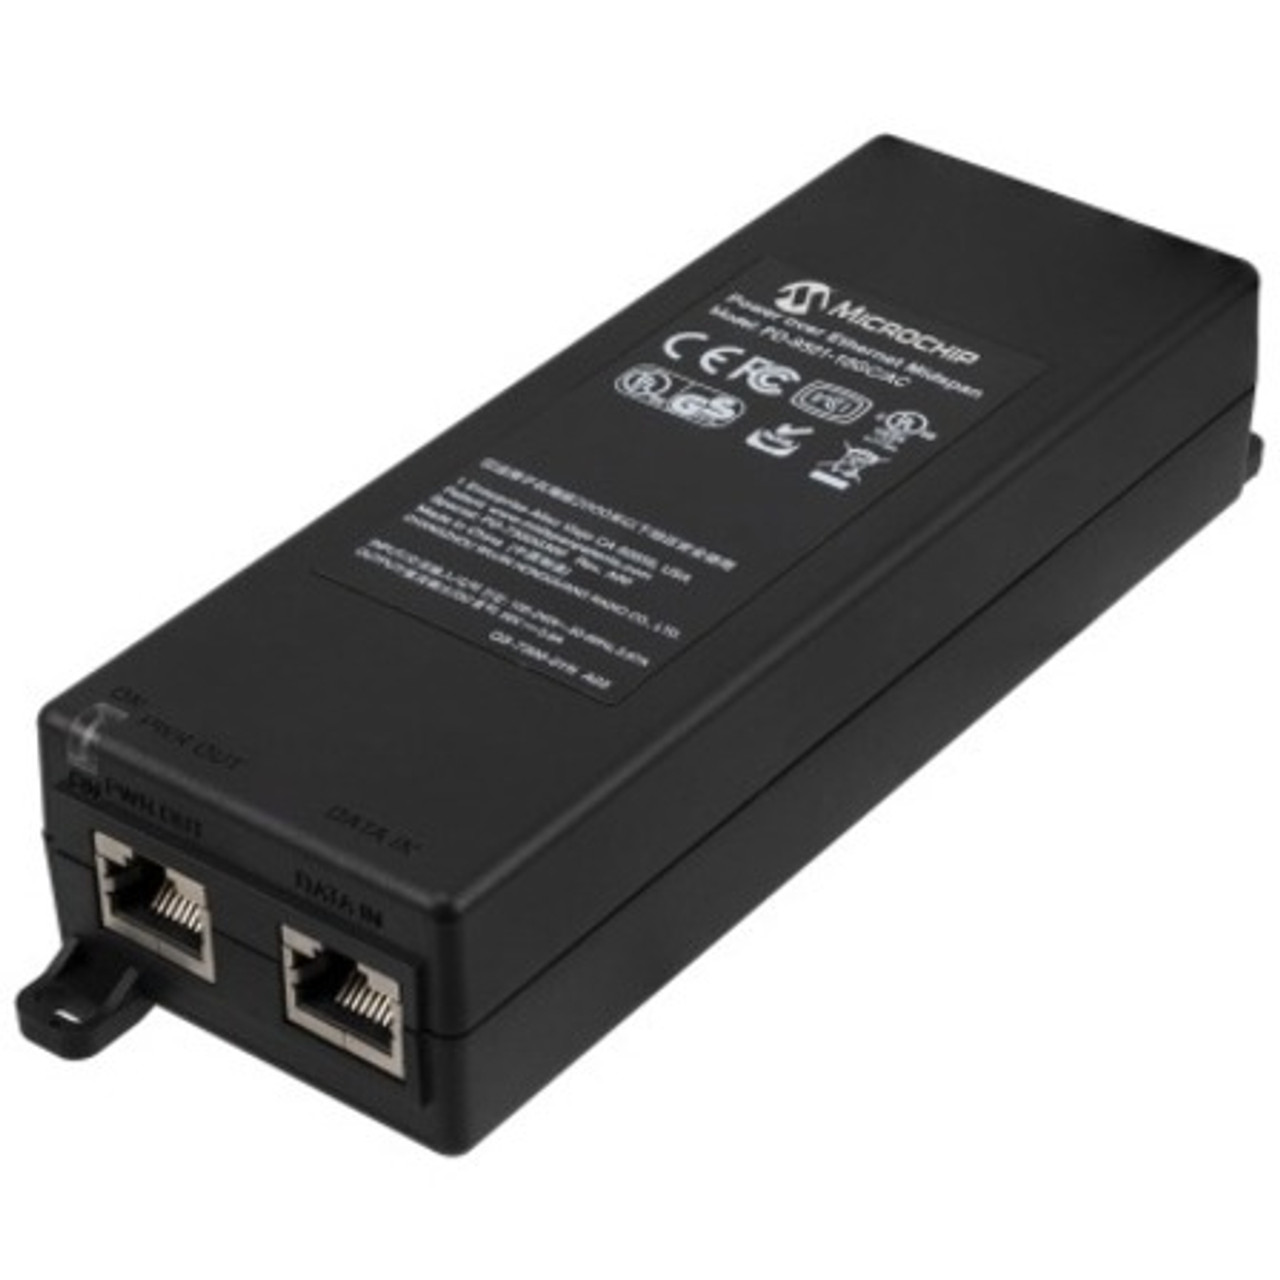 Microchip 1 port, 60W, IEEE 802.3bt indoor PoE midspan - PD-9501-10GC/AC-US